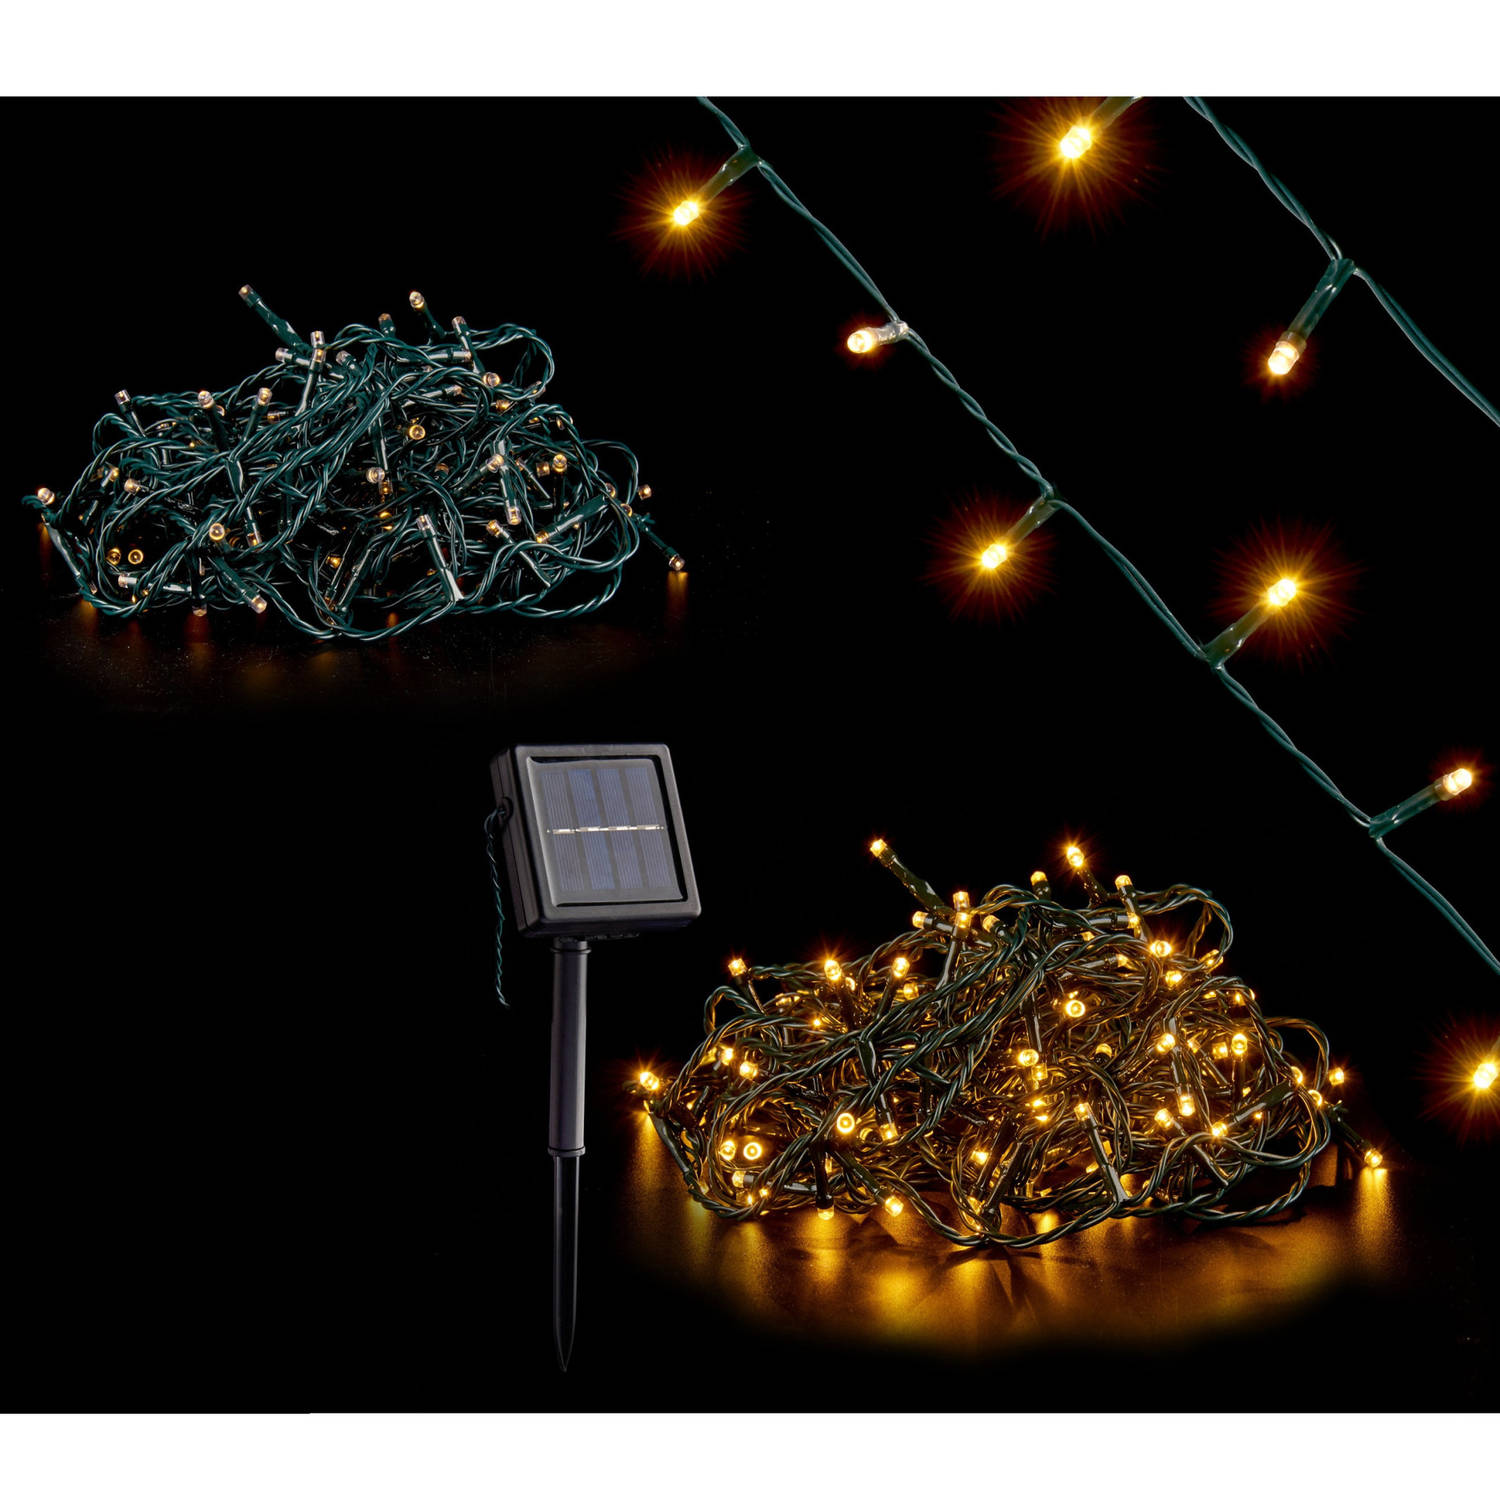 Kerstverlichting-party Lights 200 Warm Witte Led Lampjes Op Zonne-energie Kerstverlichting Kerstboom